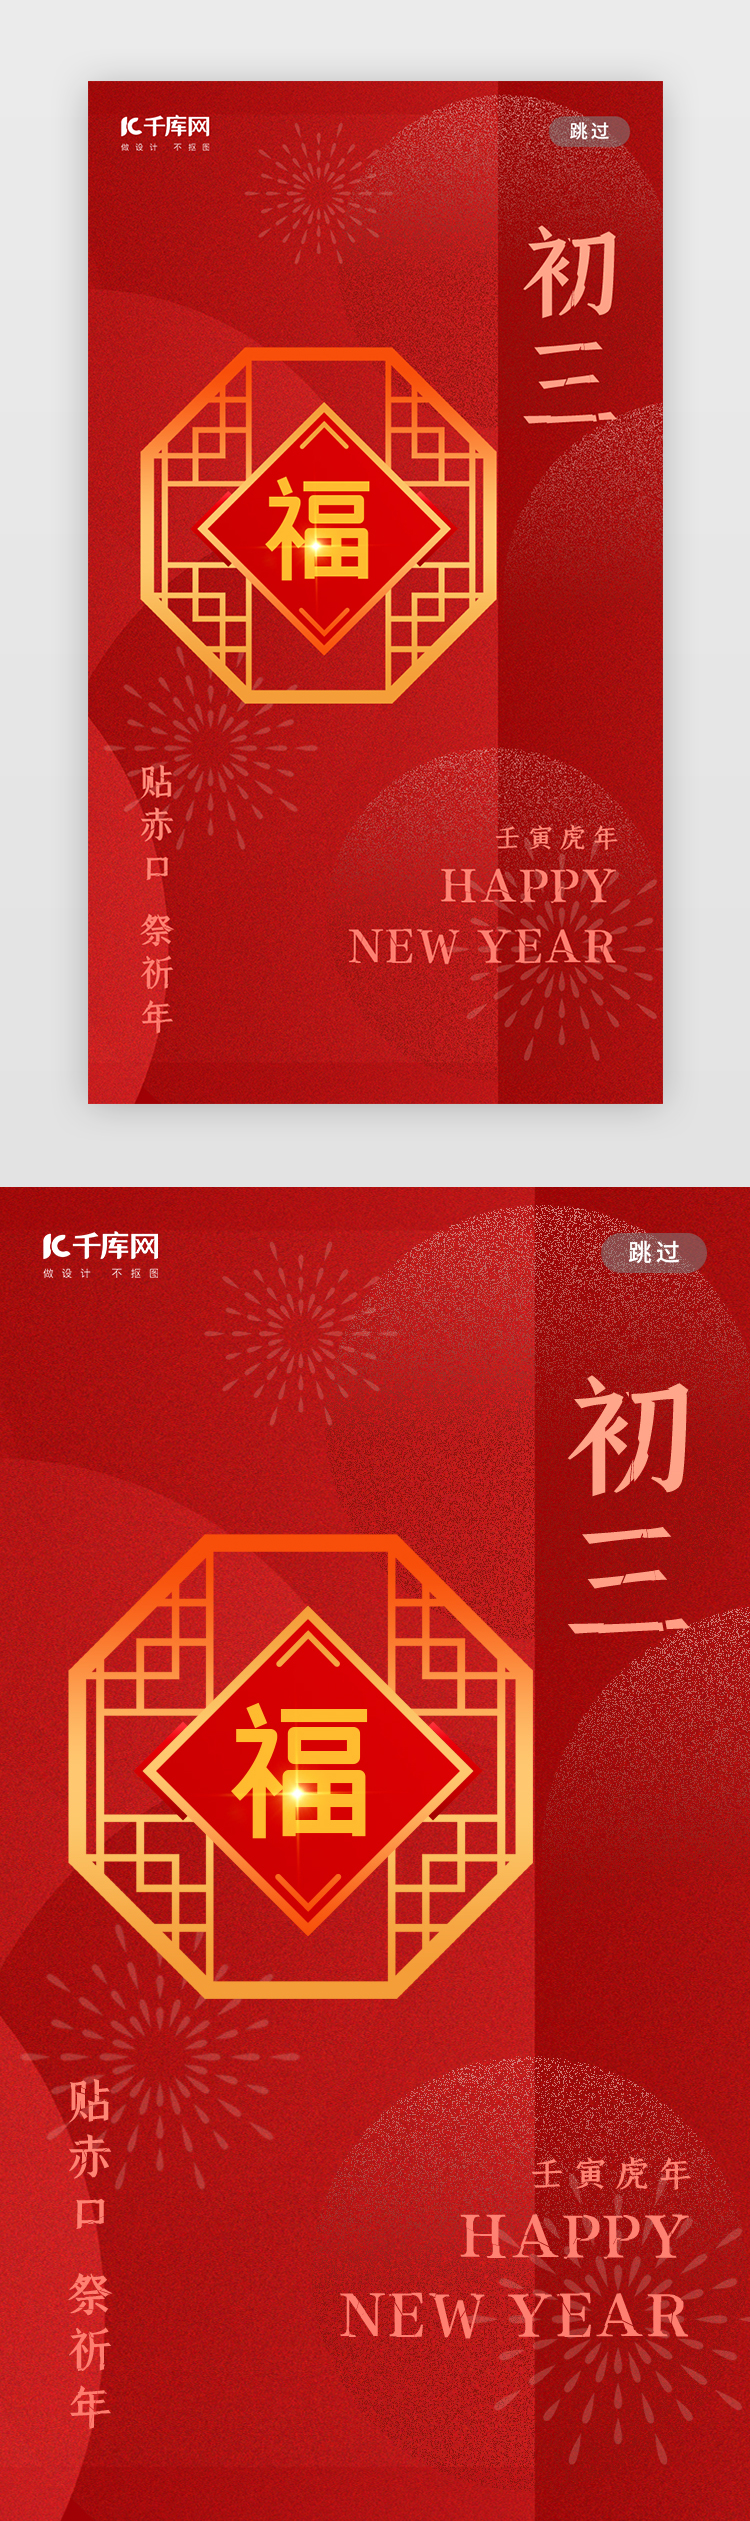 初三闪屏弥散中国红窗户图片